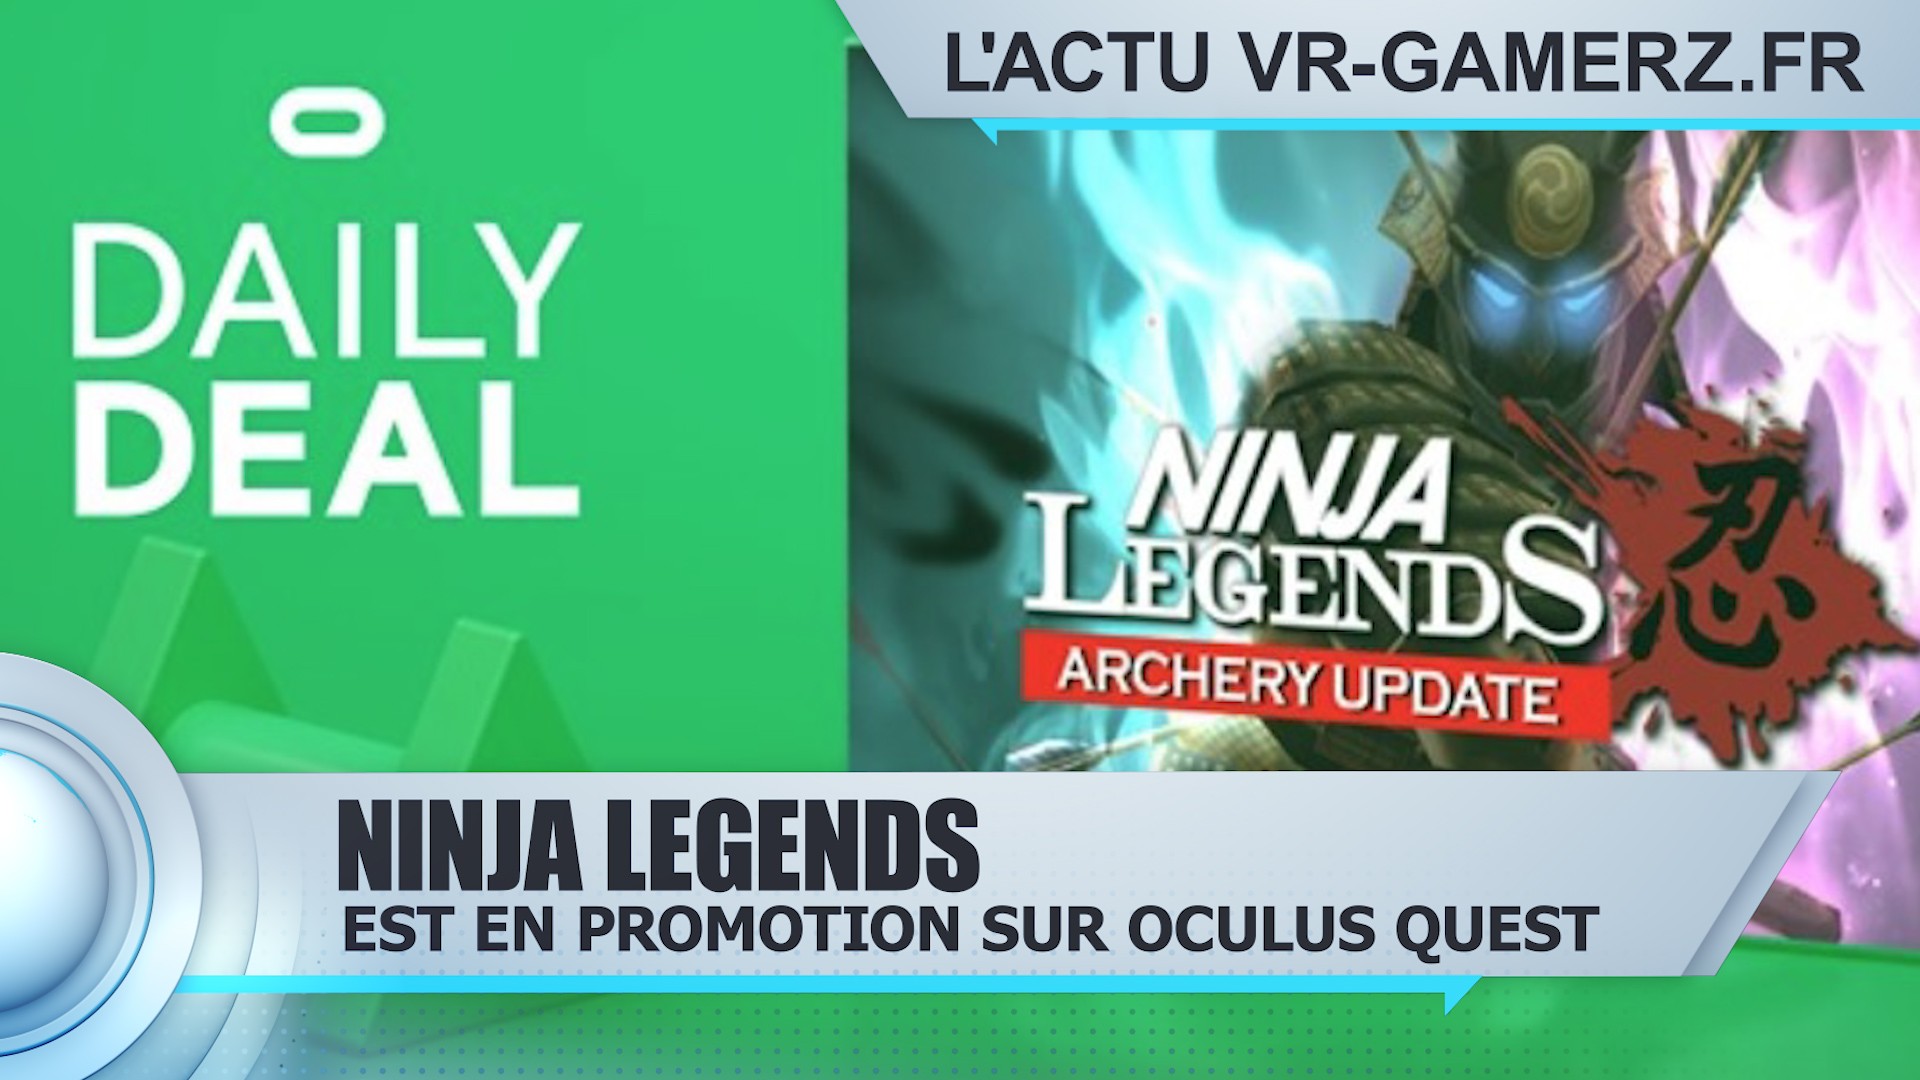 Ninja Legends est en promotion sur Oculus quest  !